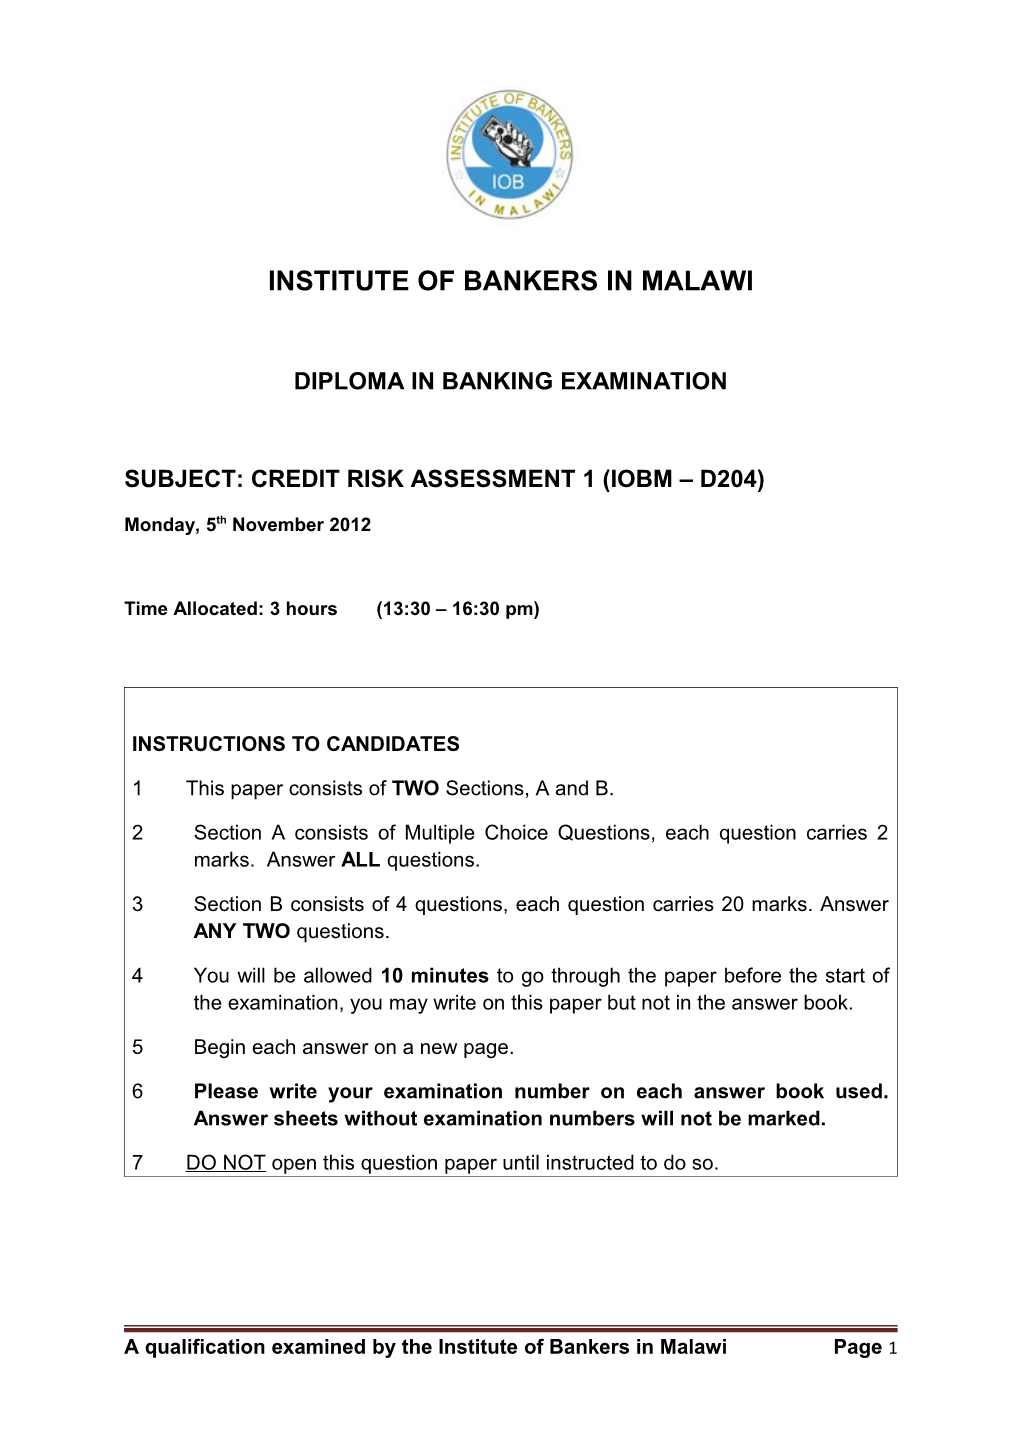 Subject: Credit Risk Assessment 1 (Iobm D204)